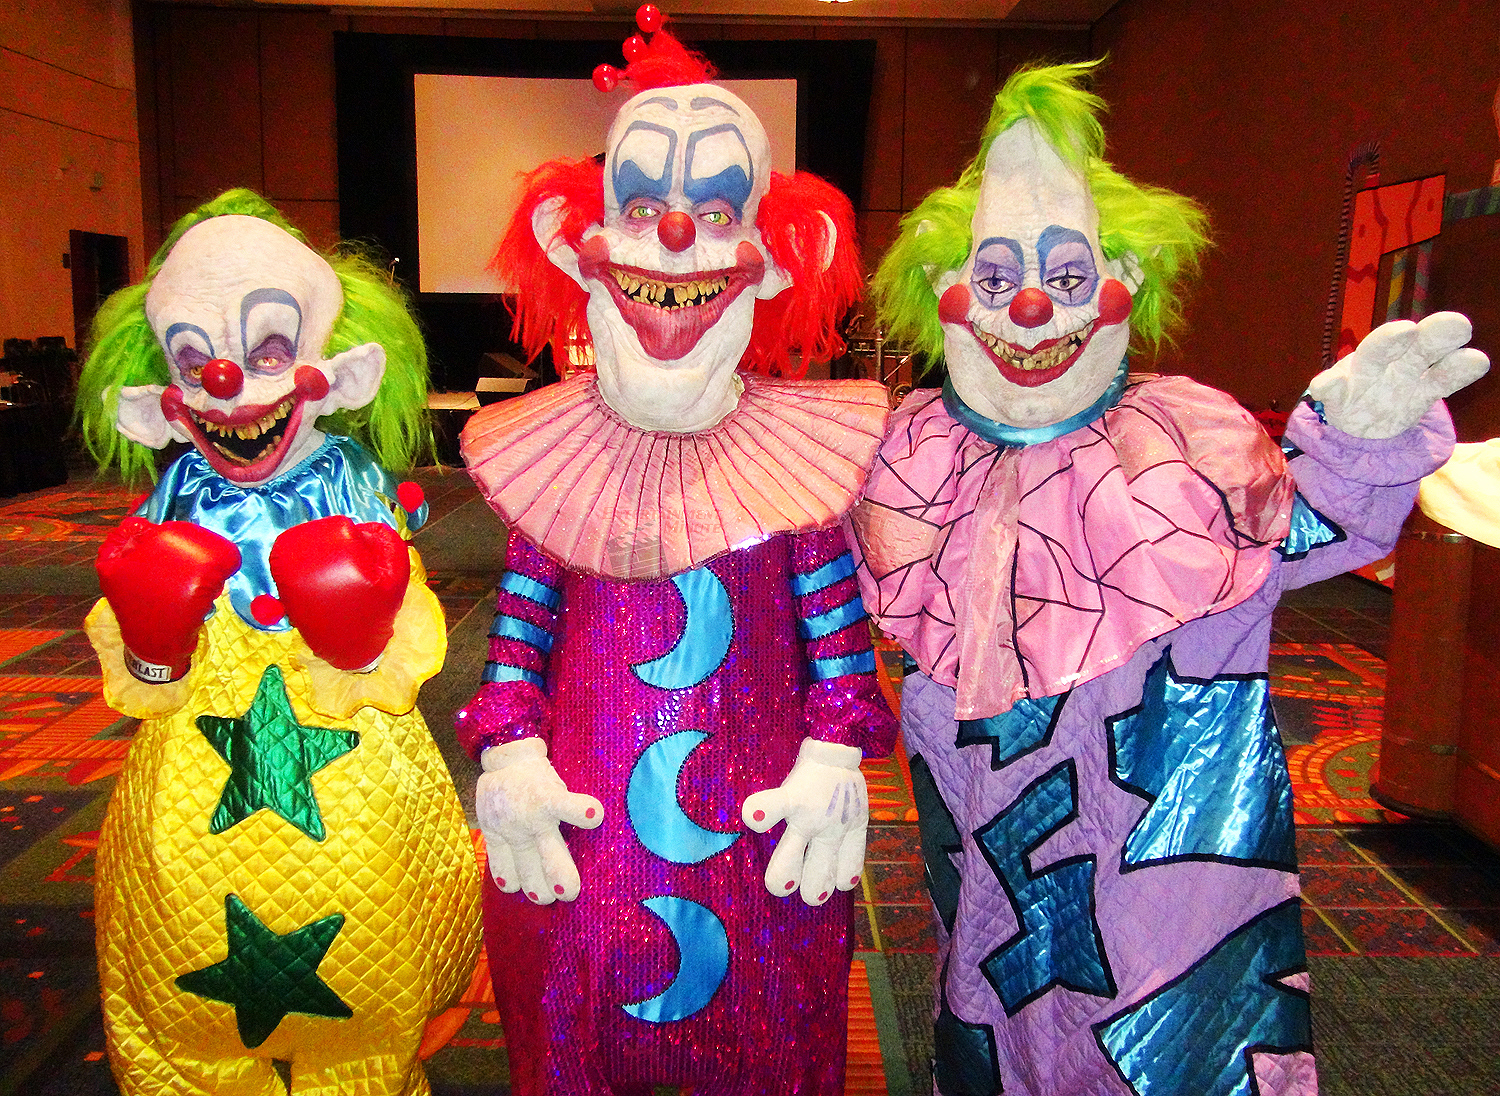 Killer klowns from outer. Killer Klowns from Outer Space. Scare Zone Killer Klowns from Outer Space.